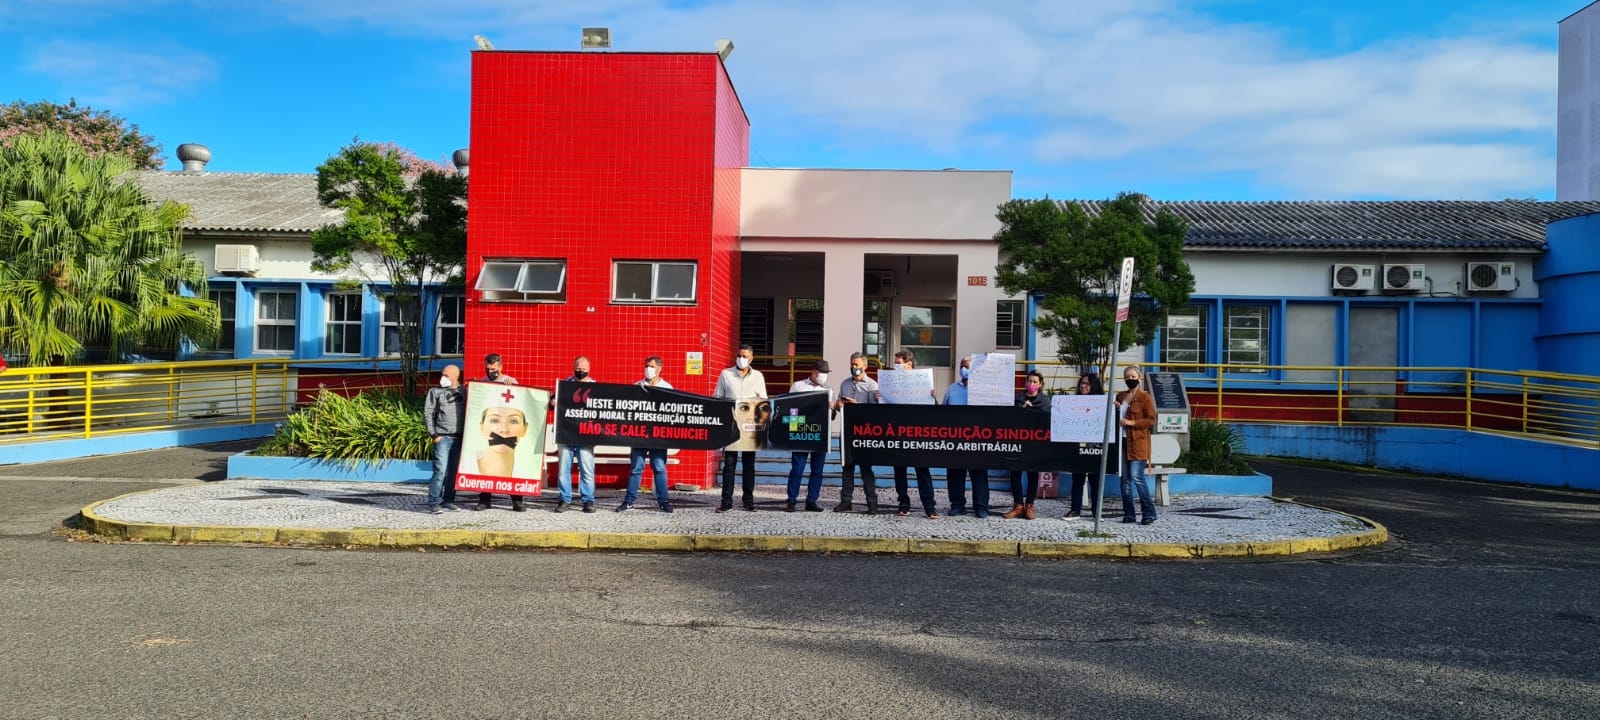 Trabalhadores do Hospital  Materno Infantil Santa Catarina protestam em Criciúma contra perseguição sindical